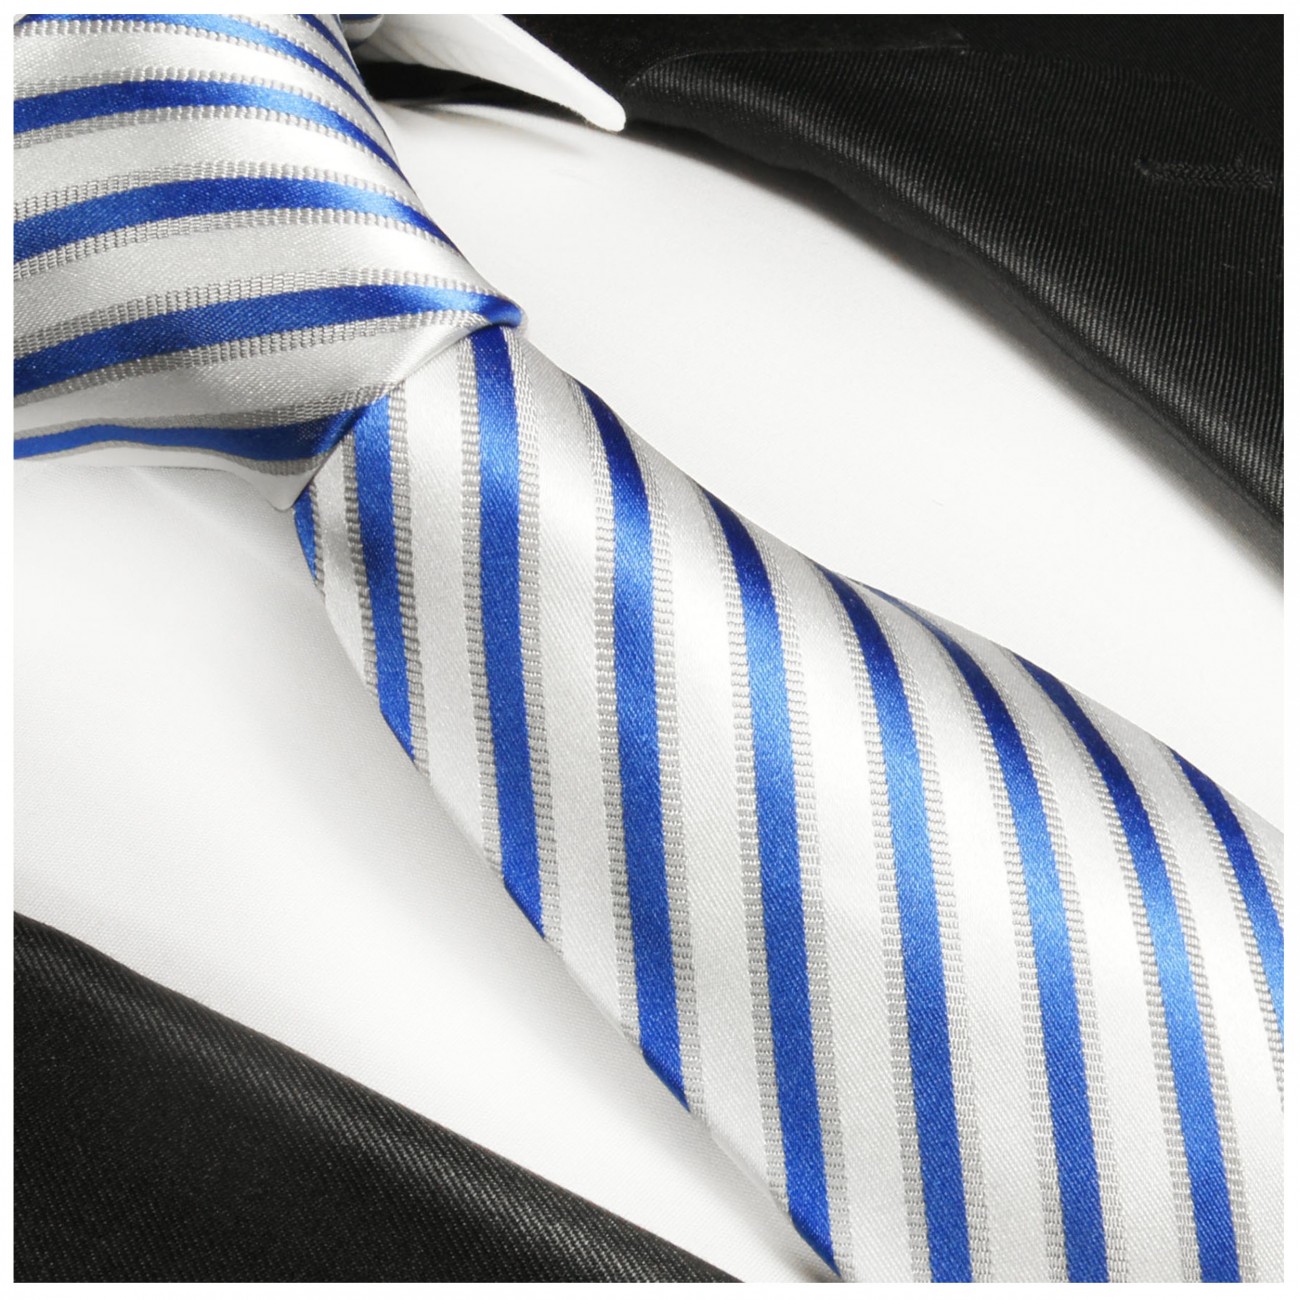 Krawatte blau weiß gestreift 685